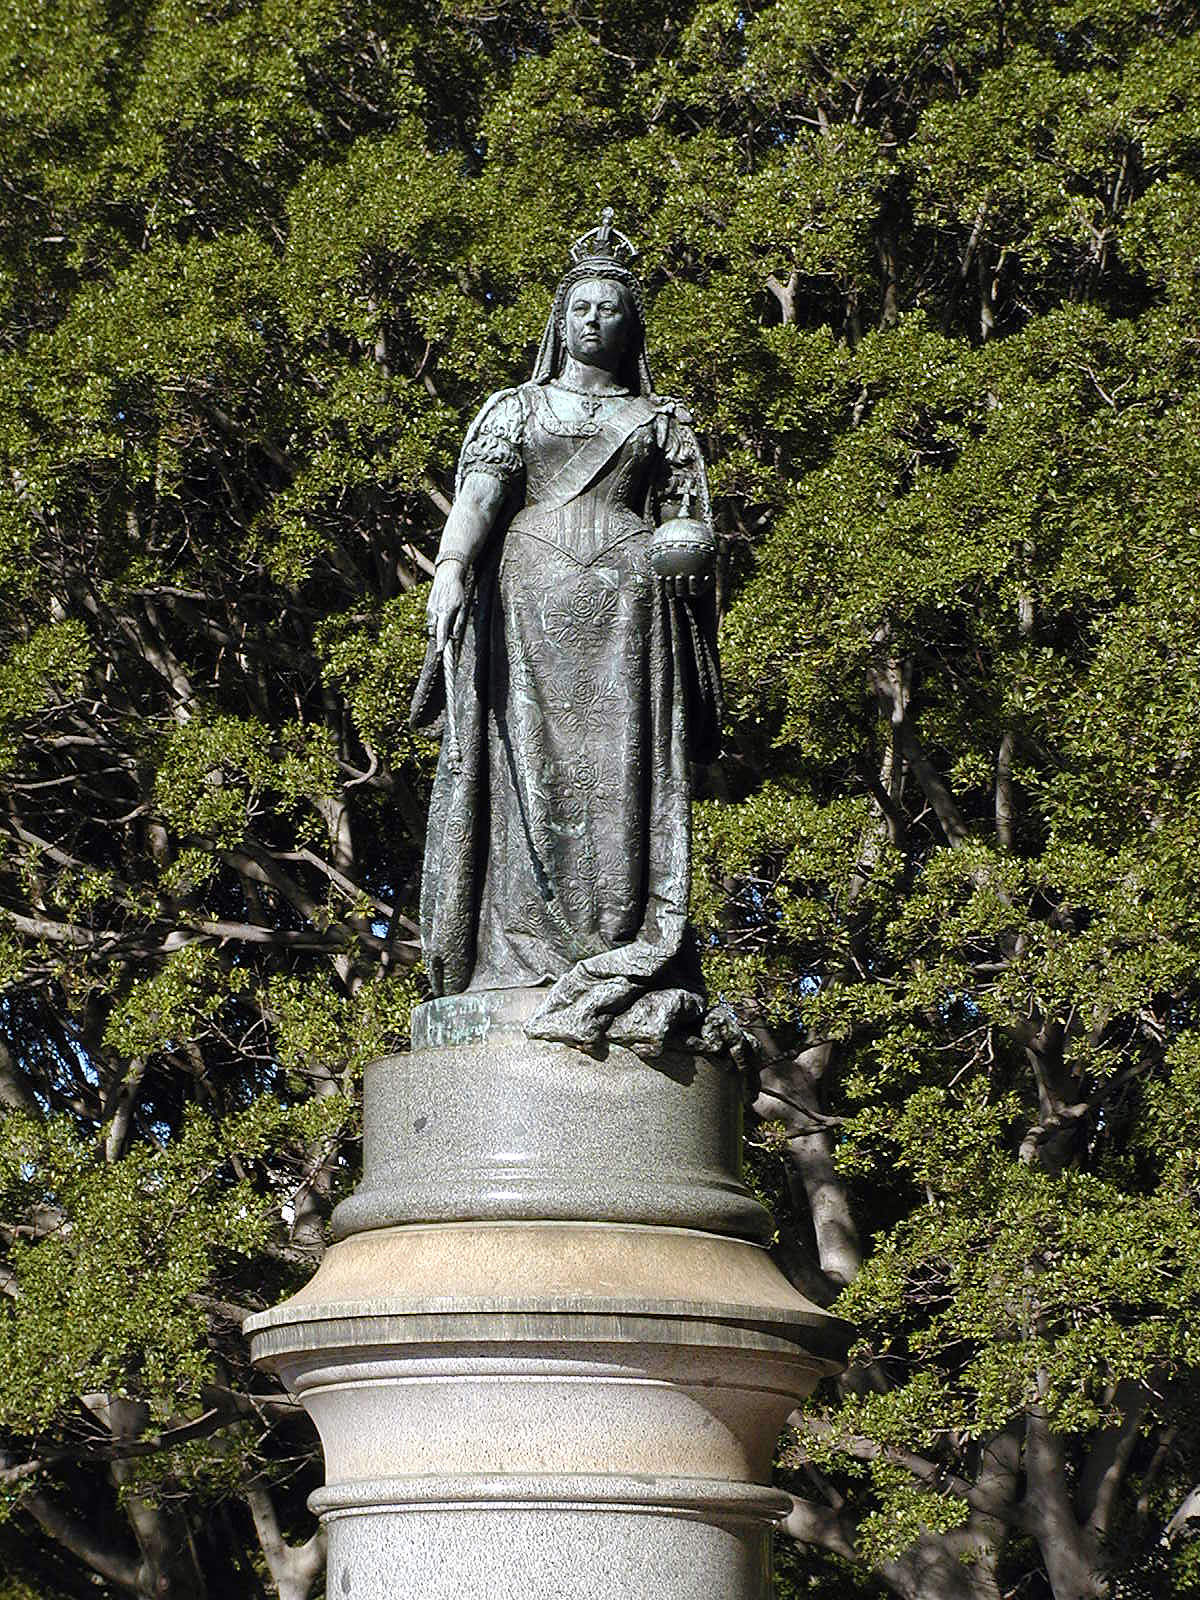 20-Jun-2001 09:54 - Sydney - Statue of Queen Victoria